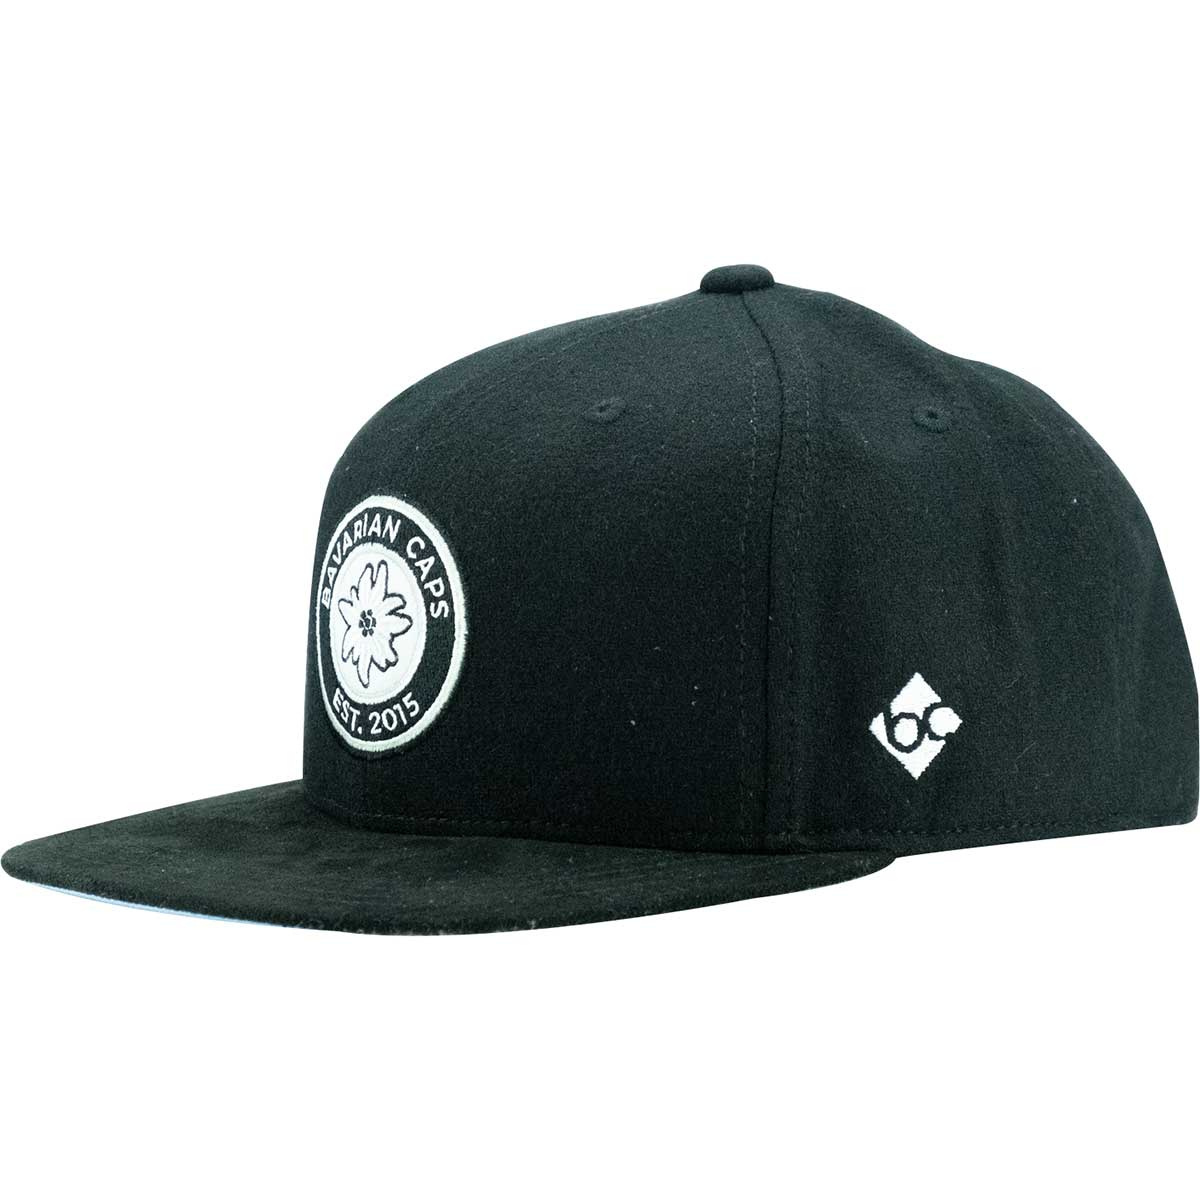 Bavarian Caps Anno 2015 Cap